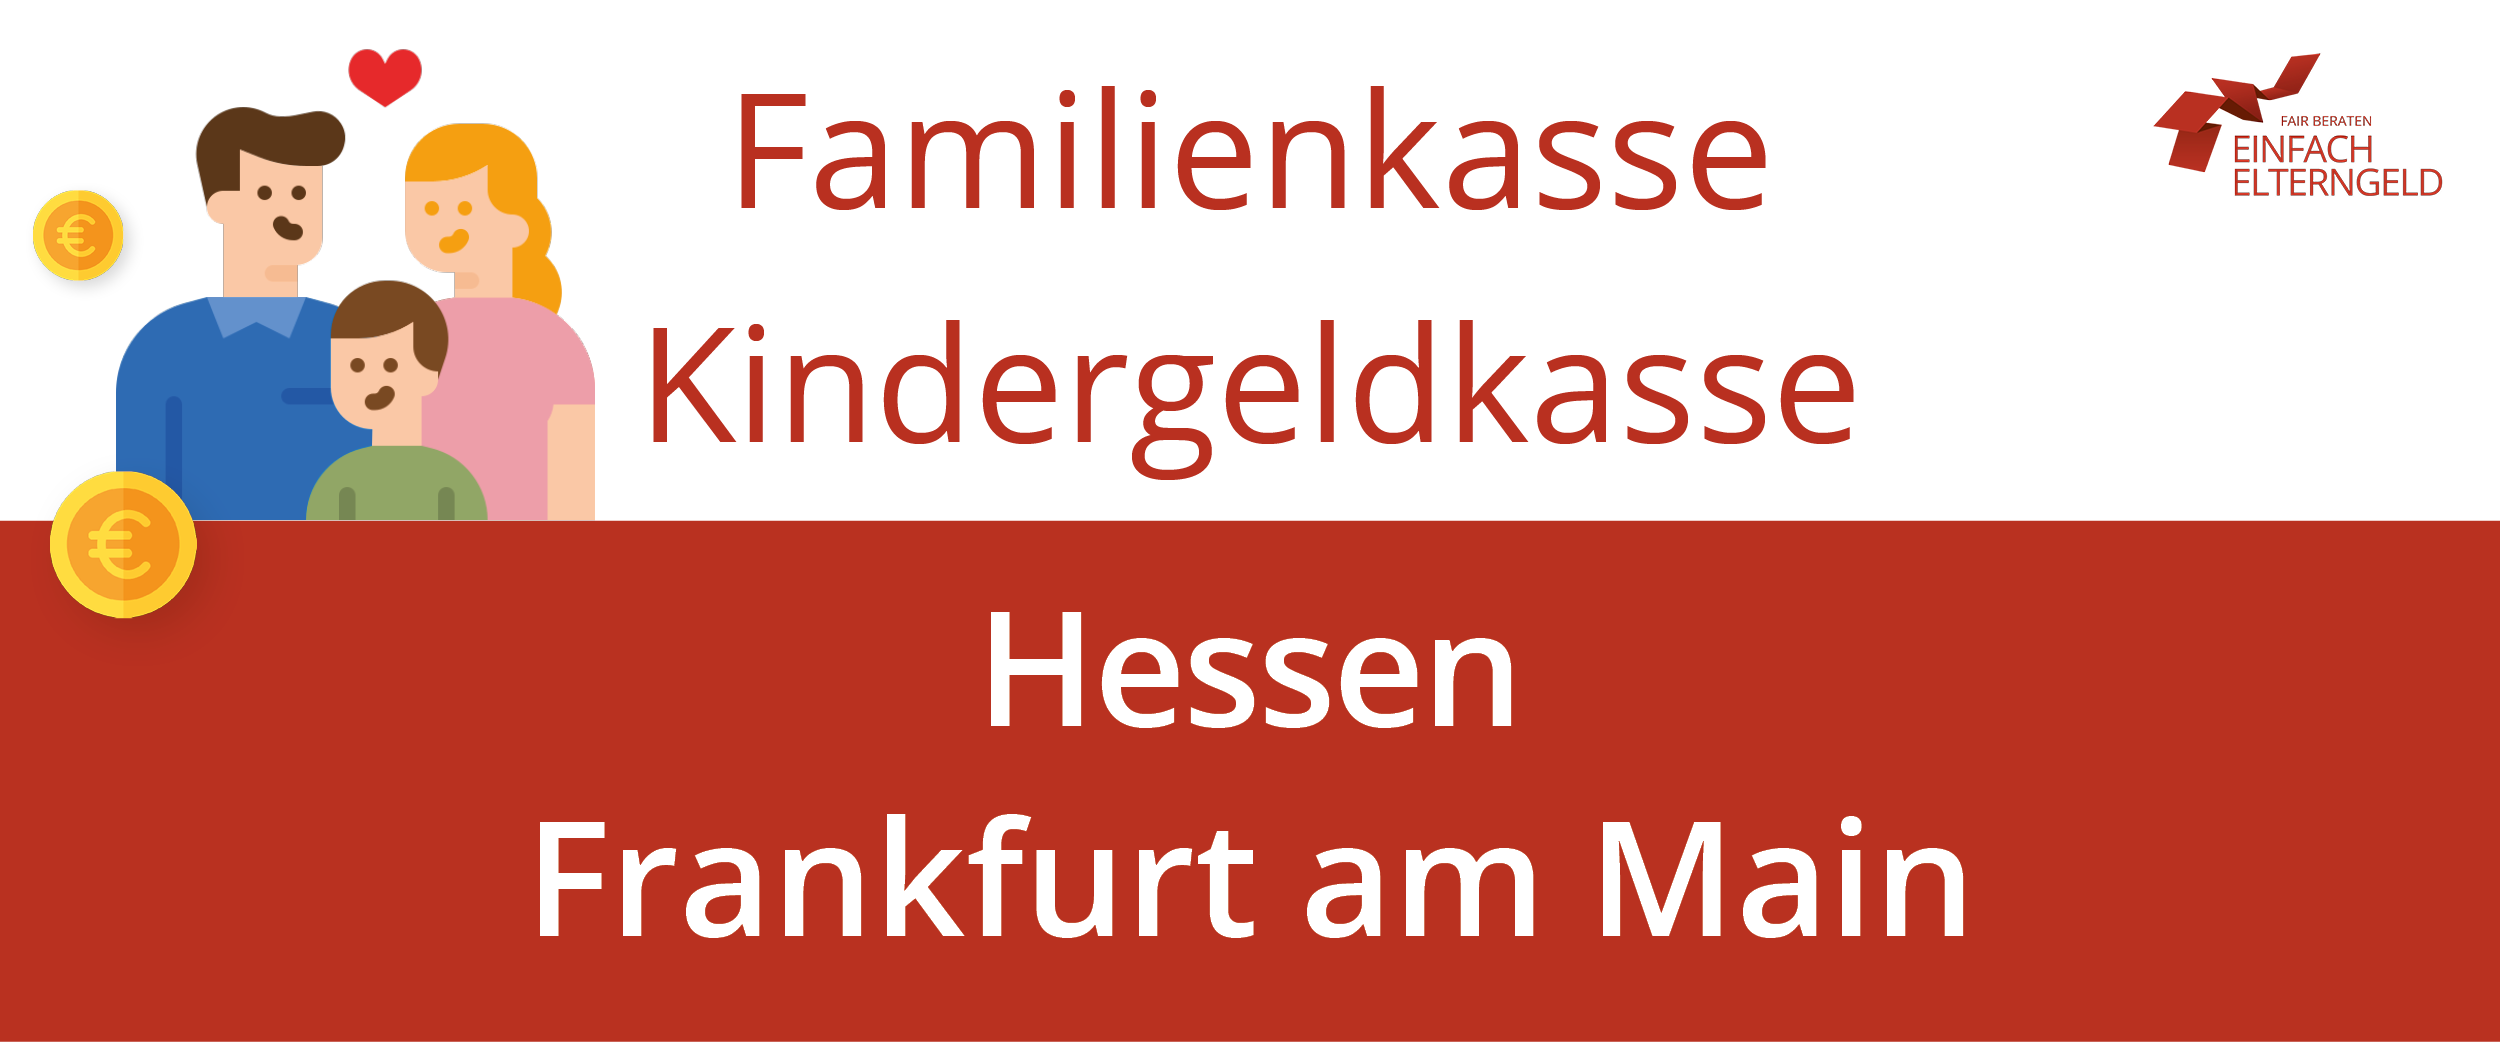 Wir stellen Ihnen die Familienkasse Kindergeldkasse Frankfurt am Main vor.